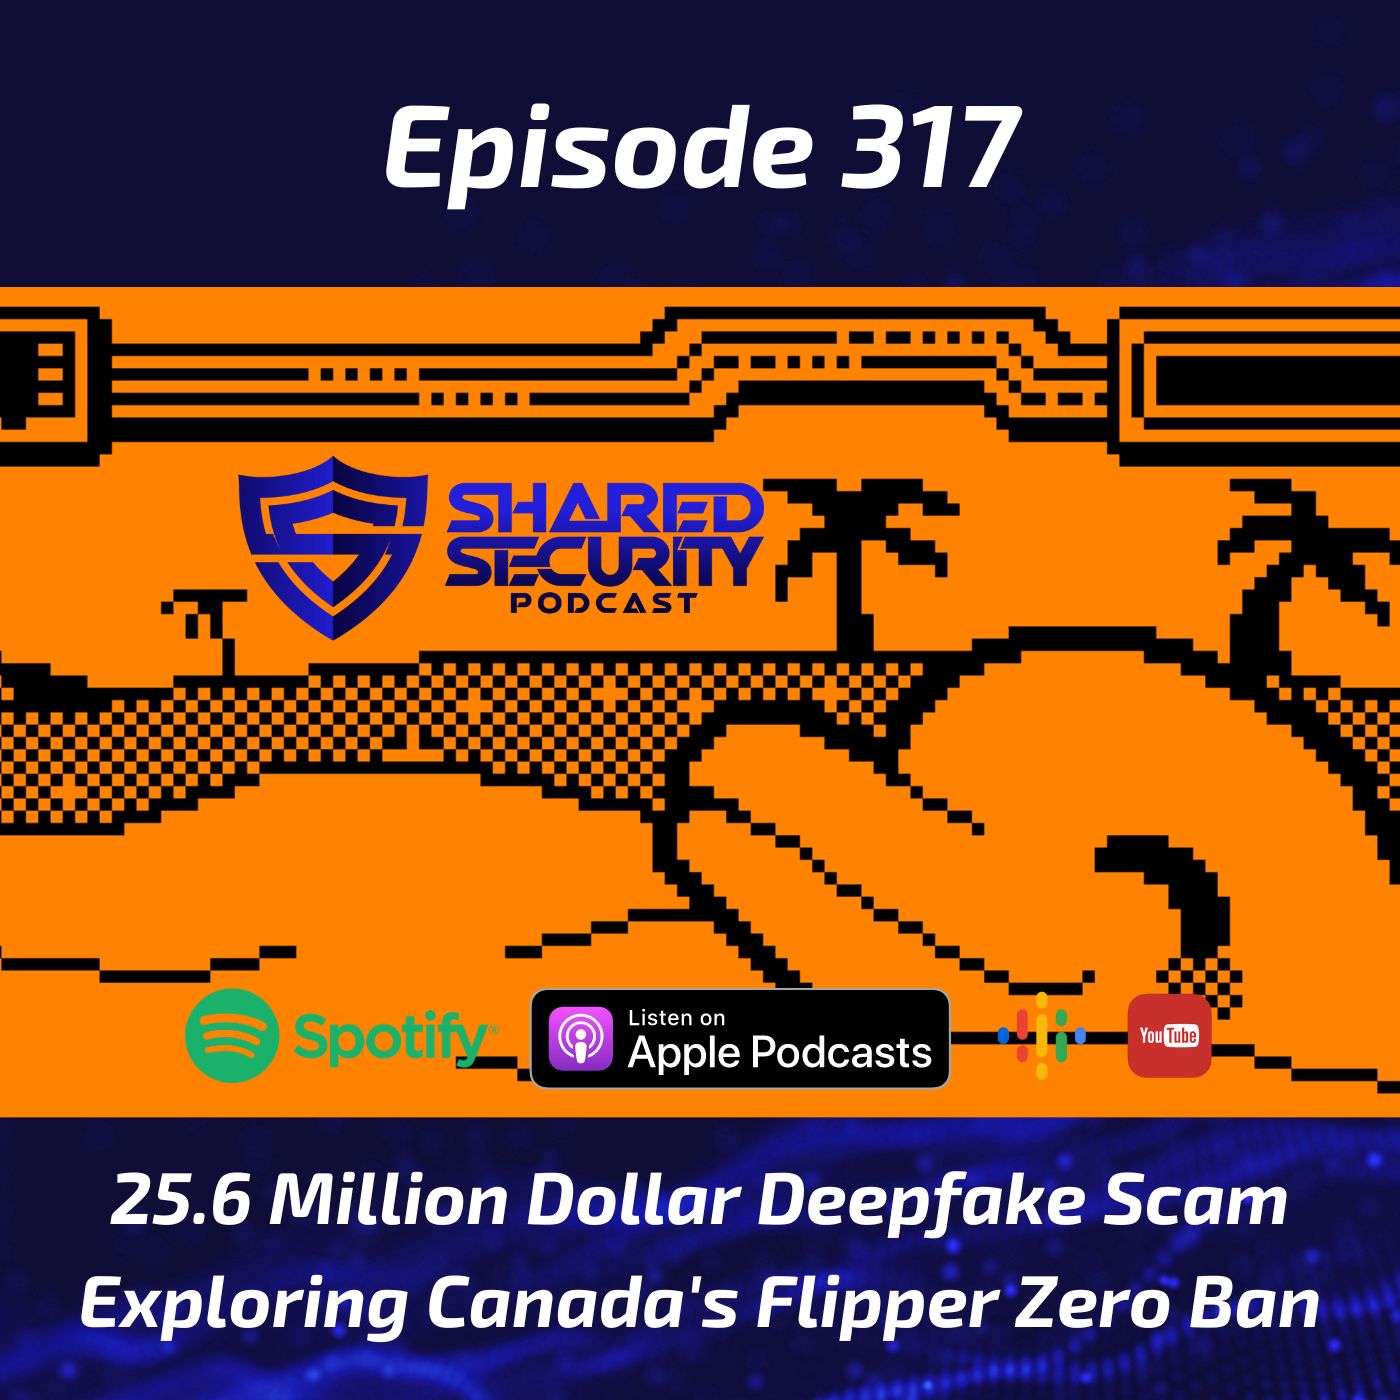 25.6 Million Dollar Deepfake Scam, Exploring Canada’s Flipper Zero Ban